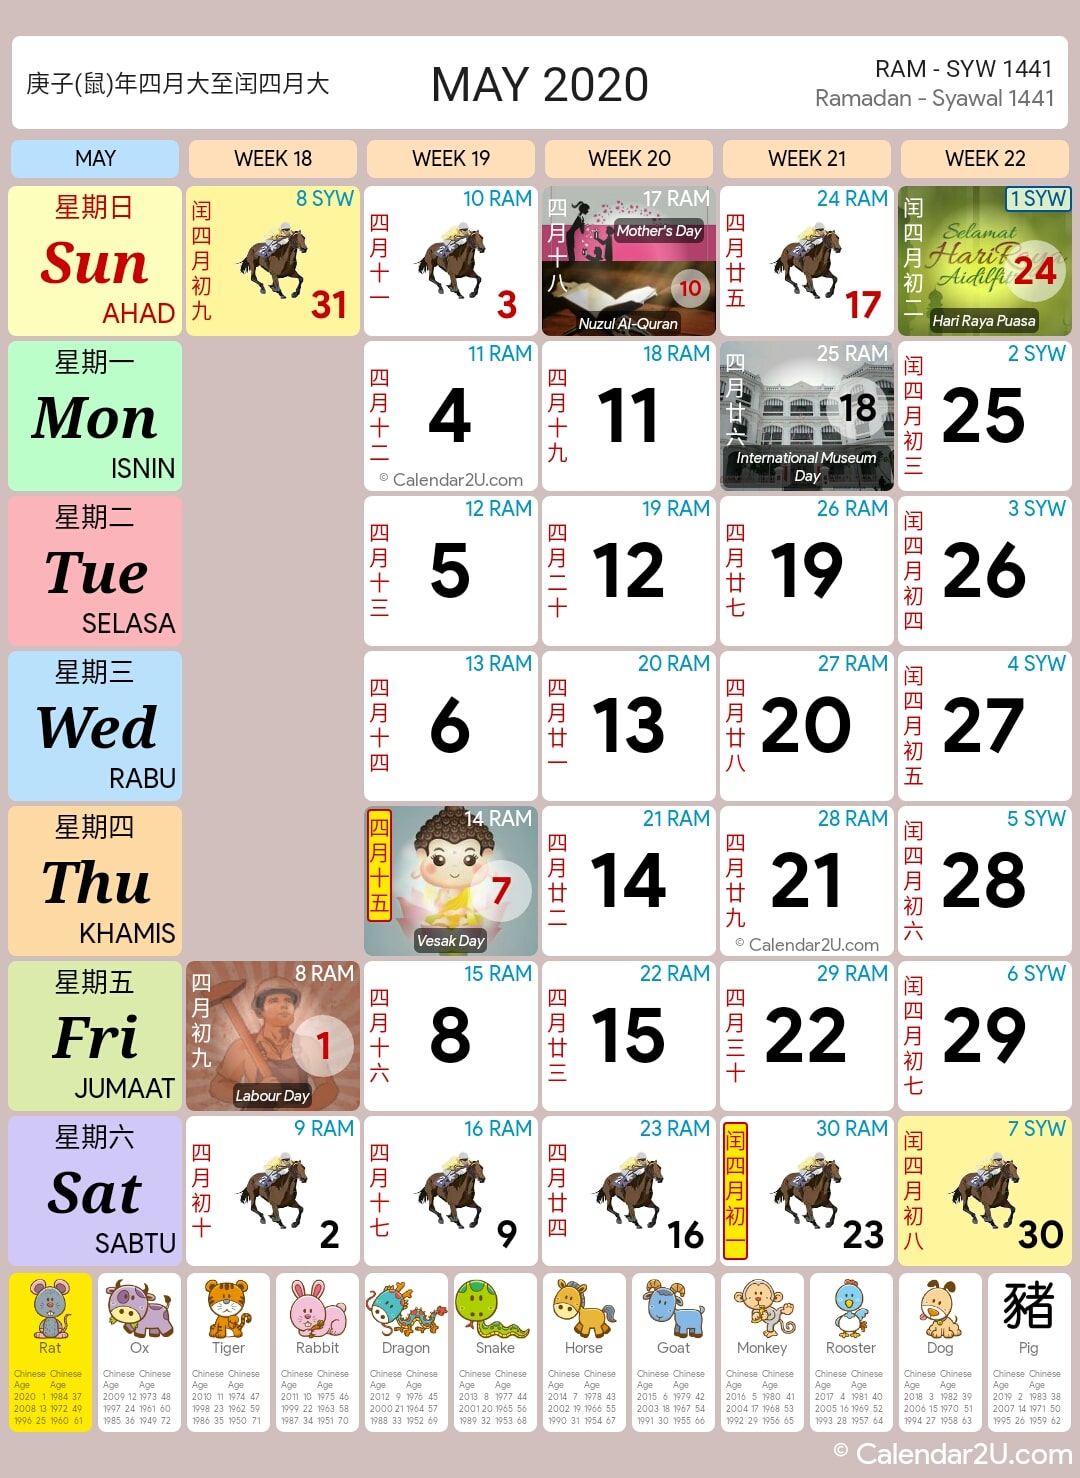 Singapore Calendar Year 2020 - Singapore Calendar1080 x 1478